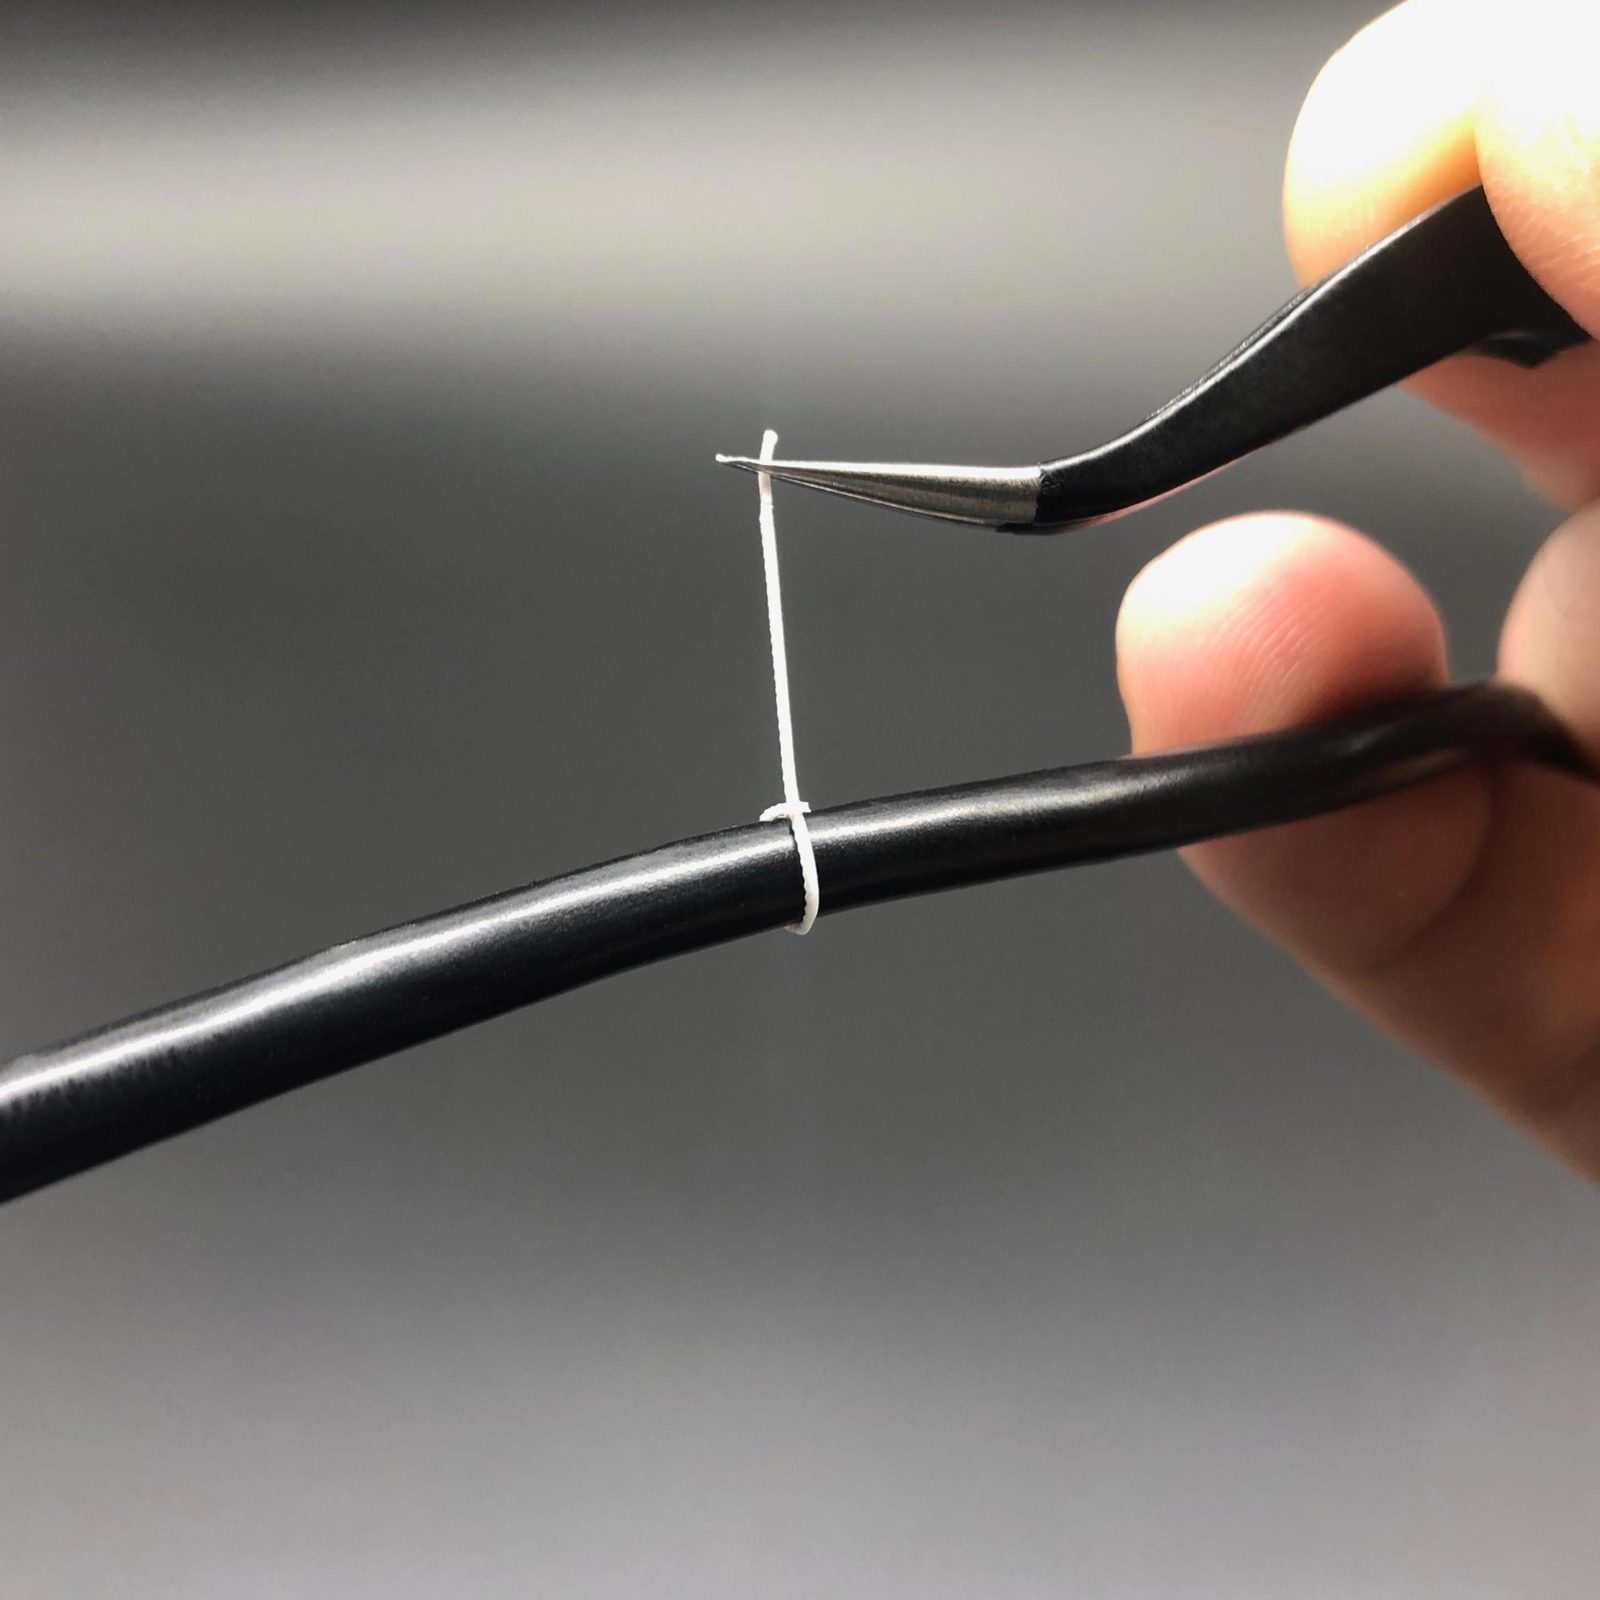 Tightening Mini Cable Ties using tweezers